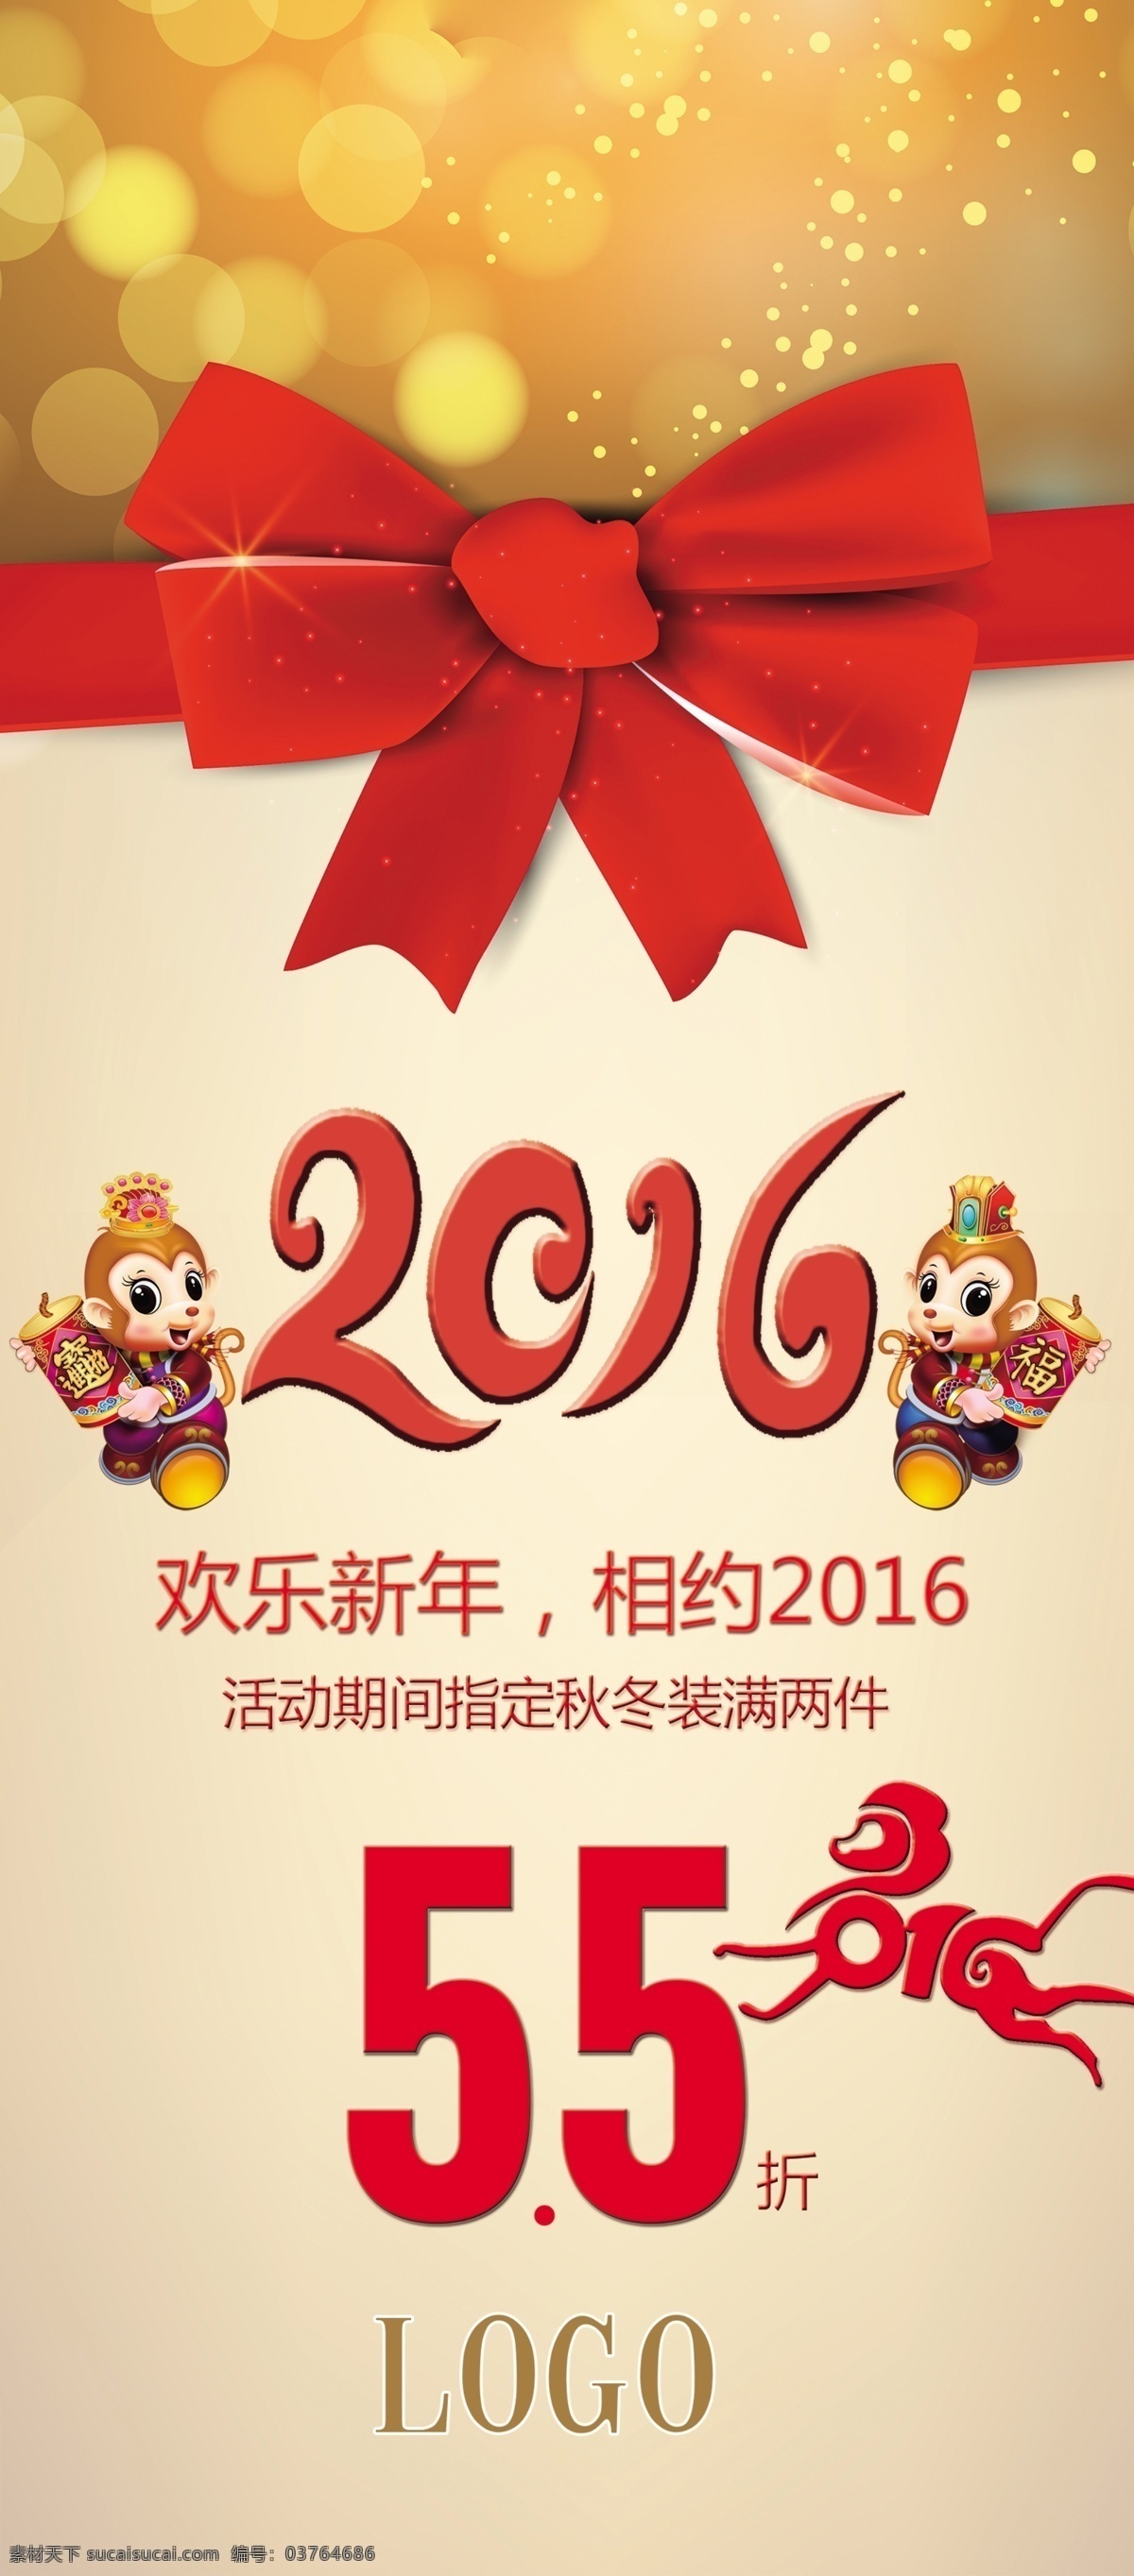 2016 年 欢乐 新年 猴年 活动 x 展架 新年展架 喜庆x展架 喜庆背景 2016海报 猴子 蝴蝶结 红色